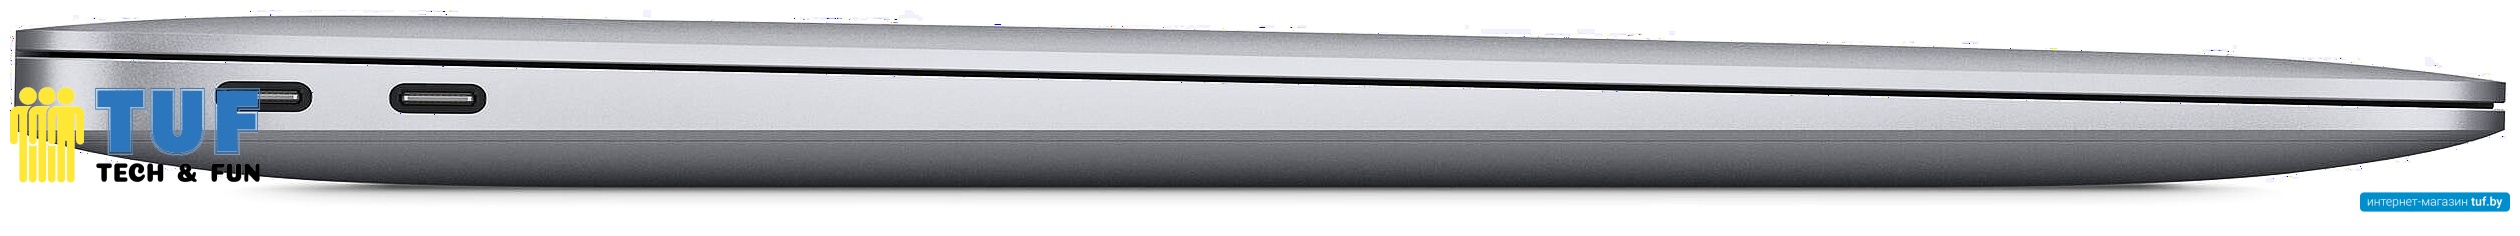 Ноутбук Apple Macbook Air 13" M1 2020 Z1250007H